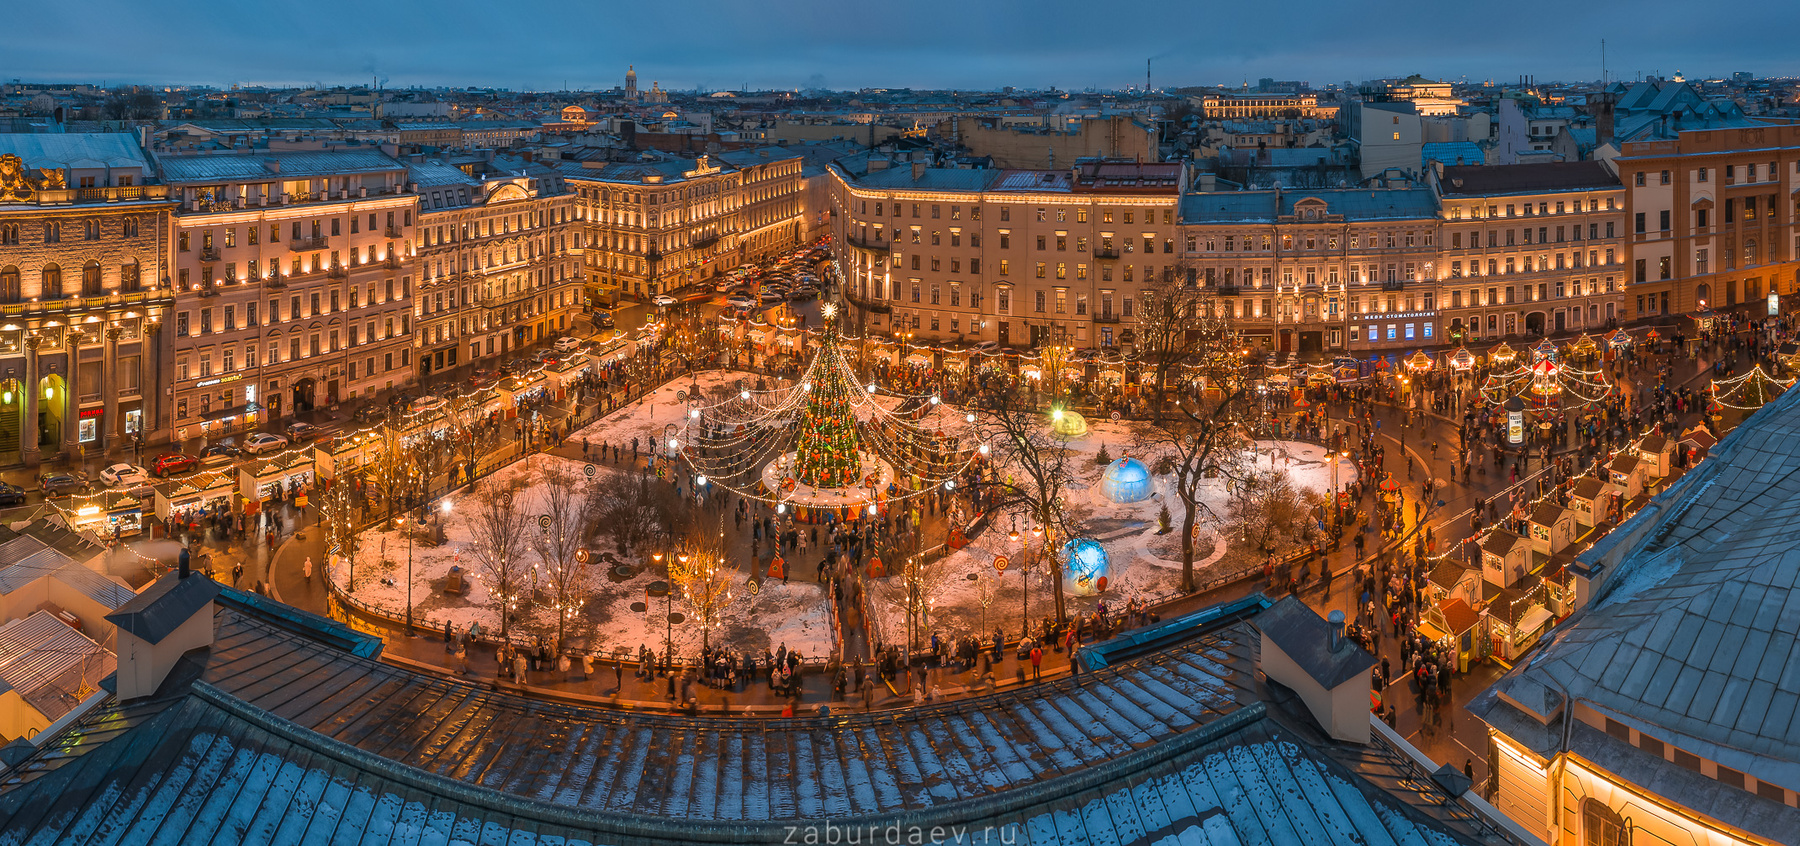 Манежная площадь россия петербург зима новый год